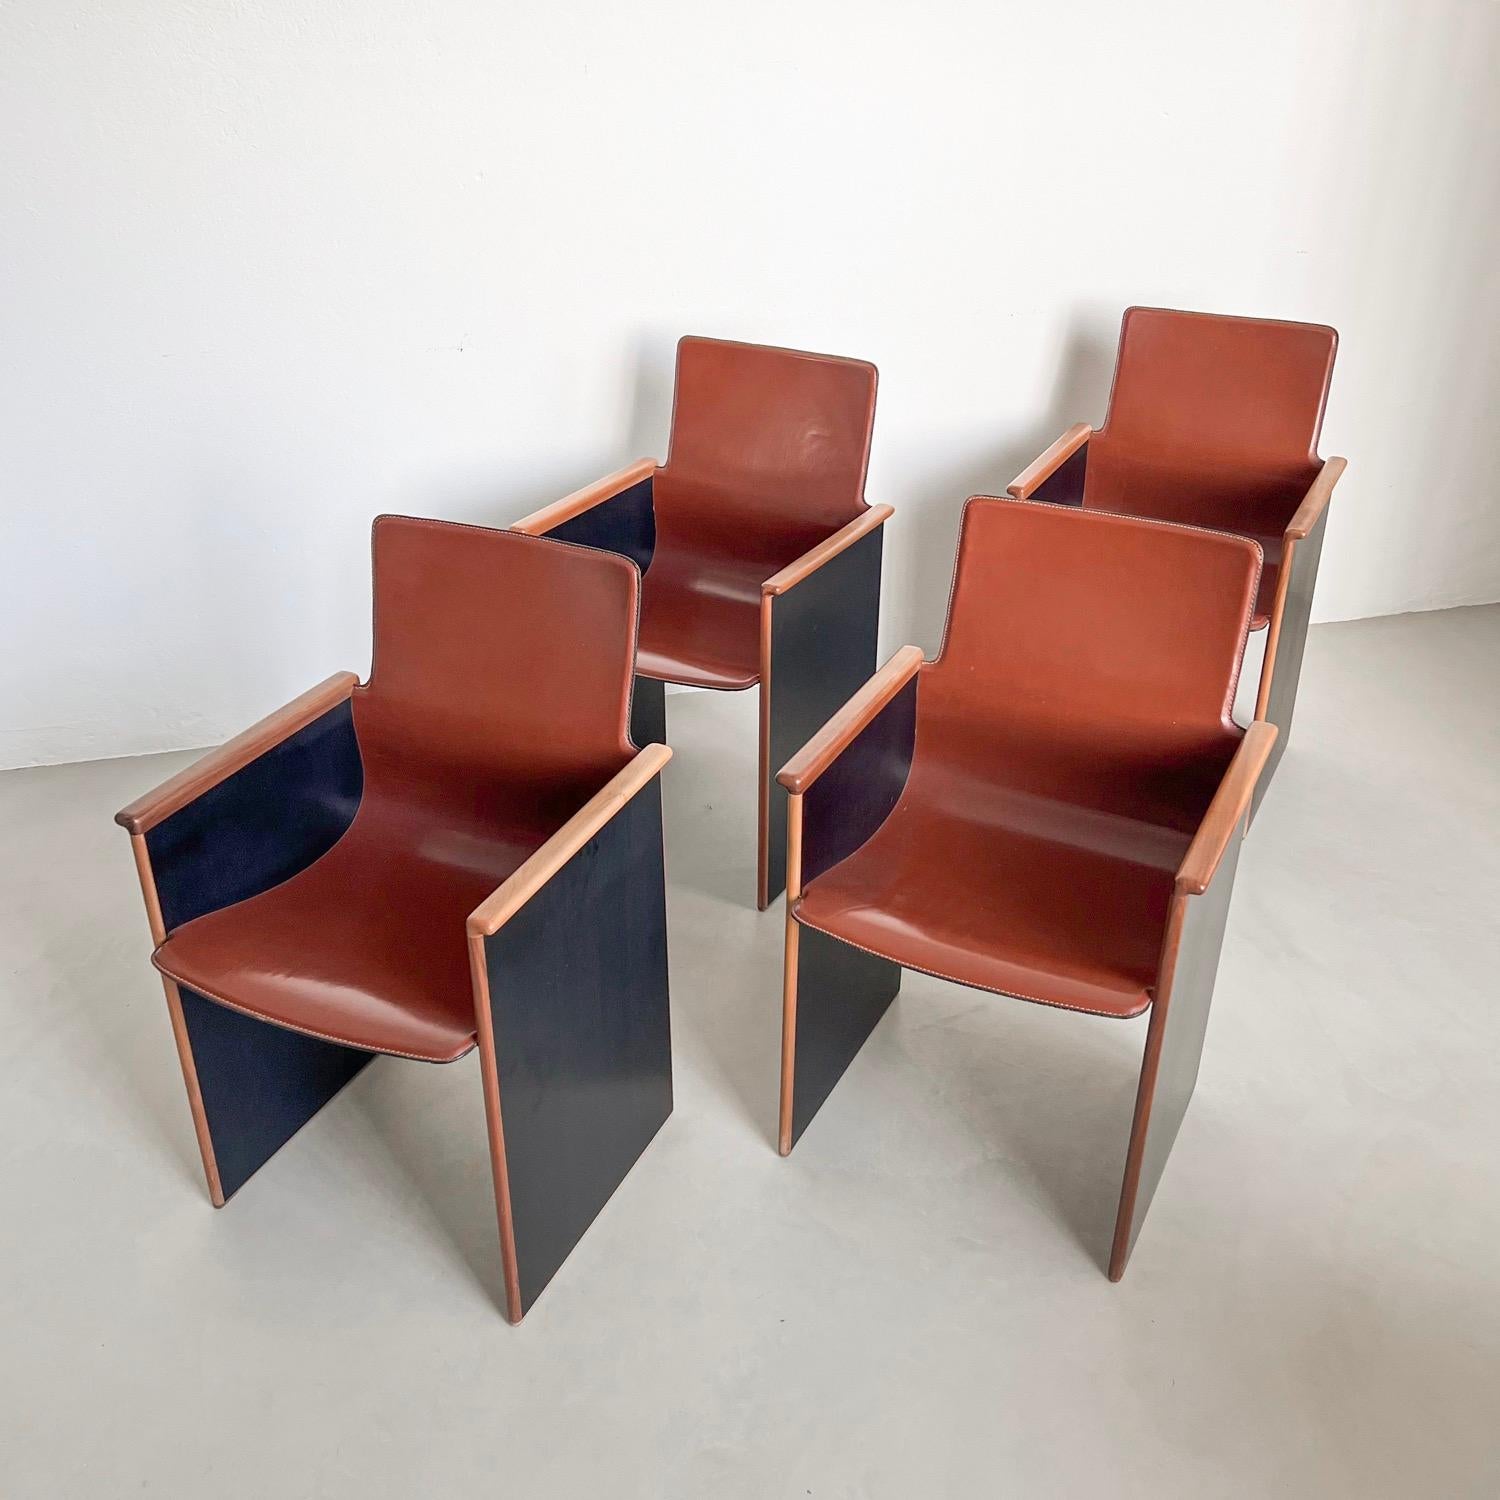 4 skulpturale Esszimmerstühle - Entree Chais - Zeitloses Design 

Äußerst seltener Satz von vier Stühlen 